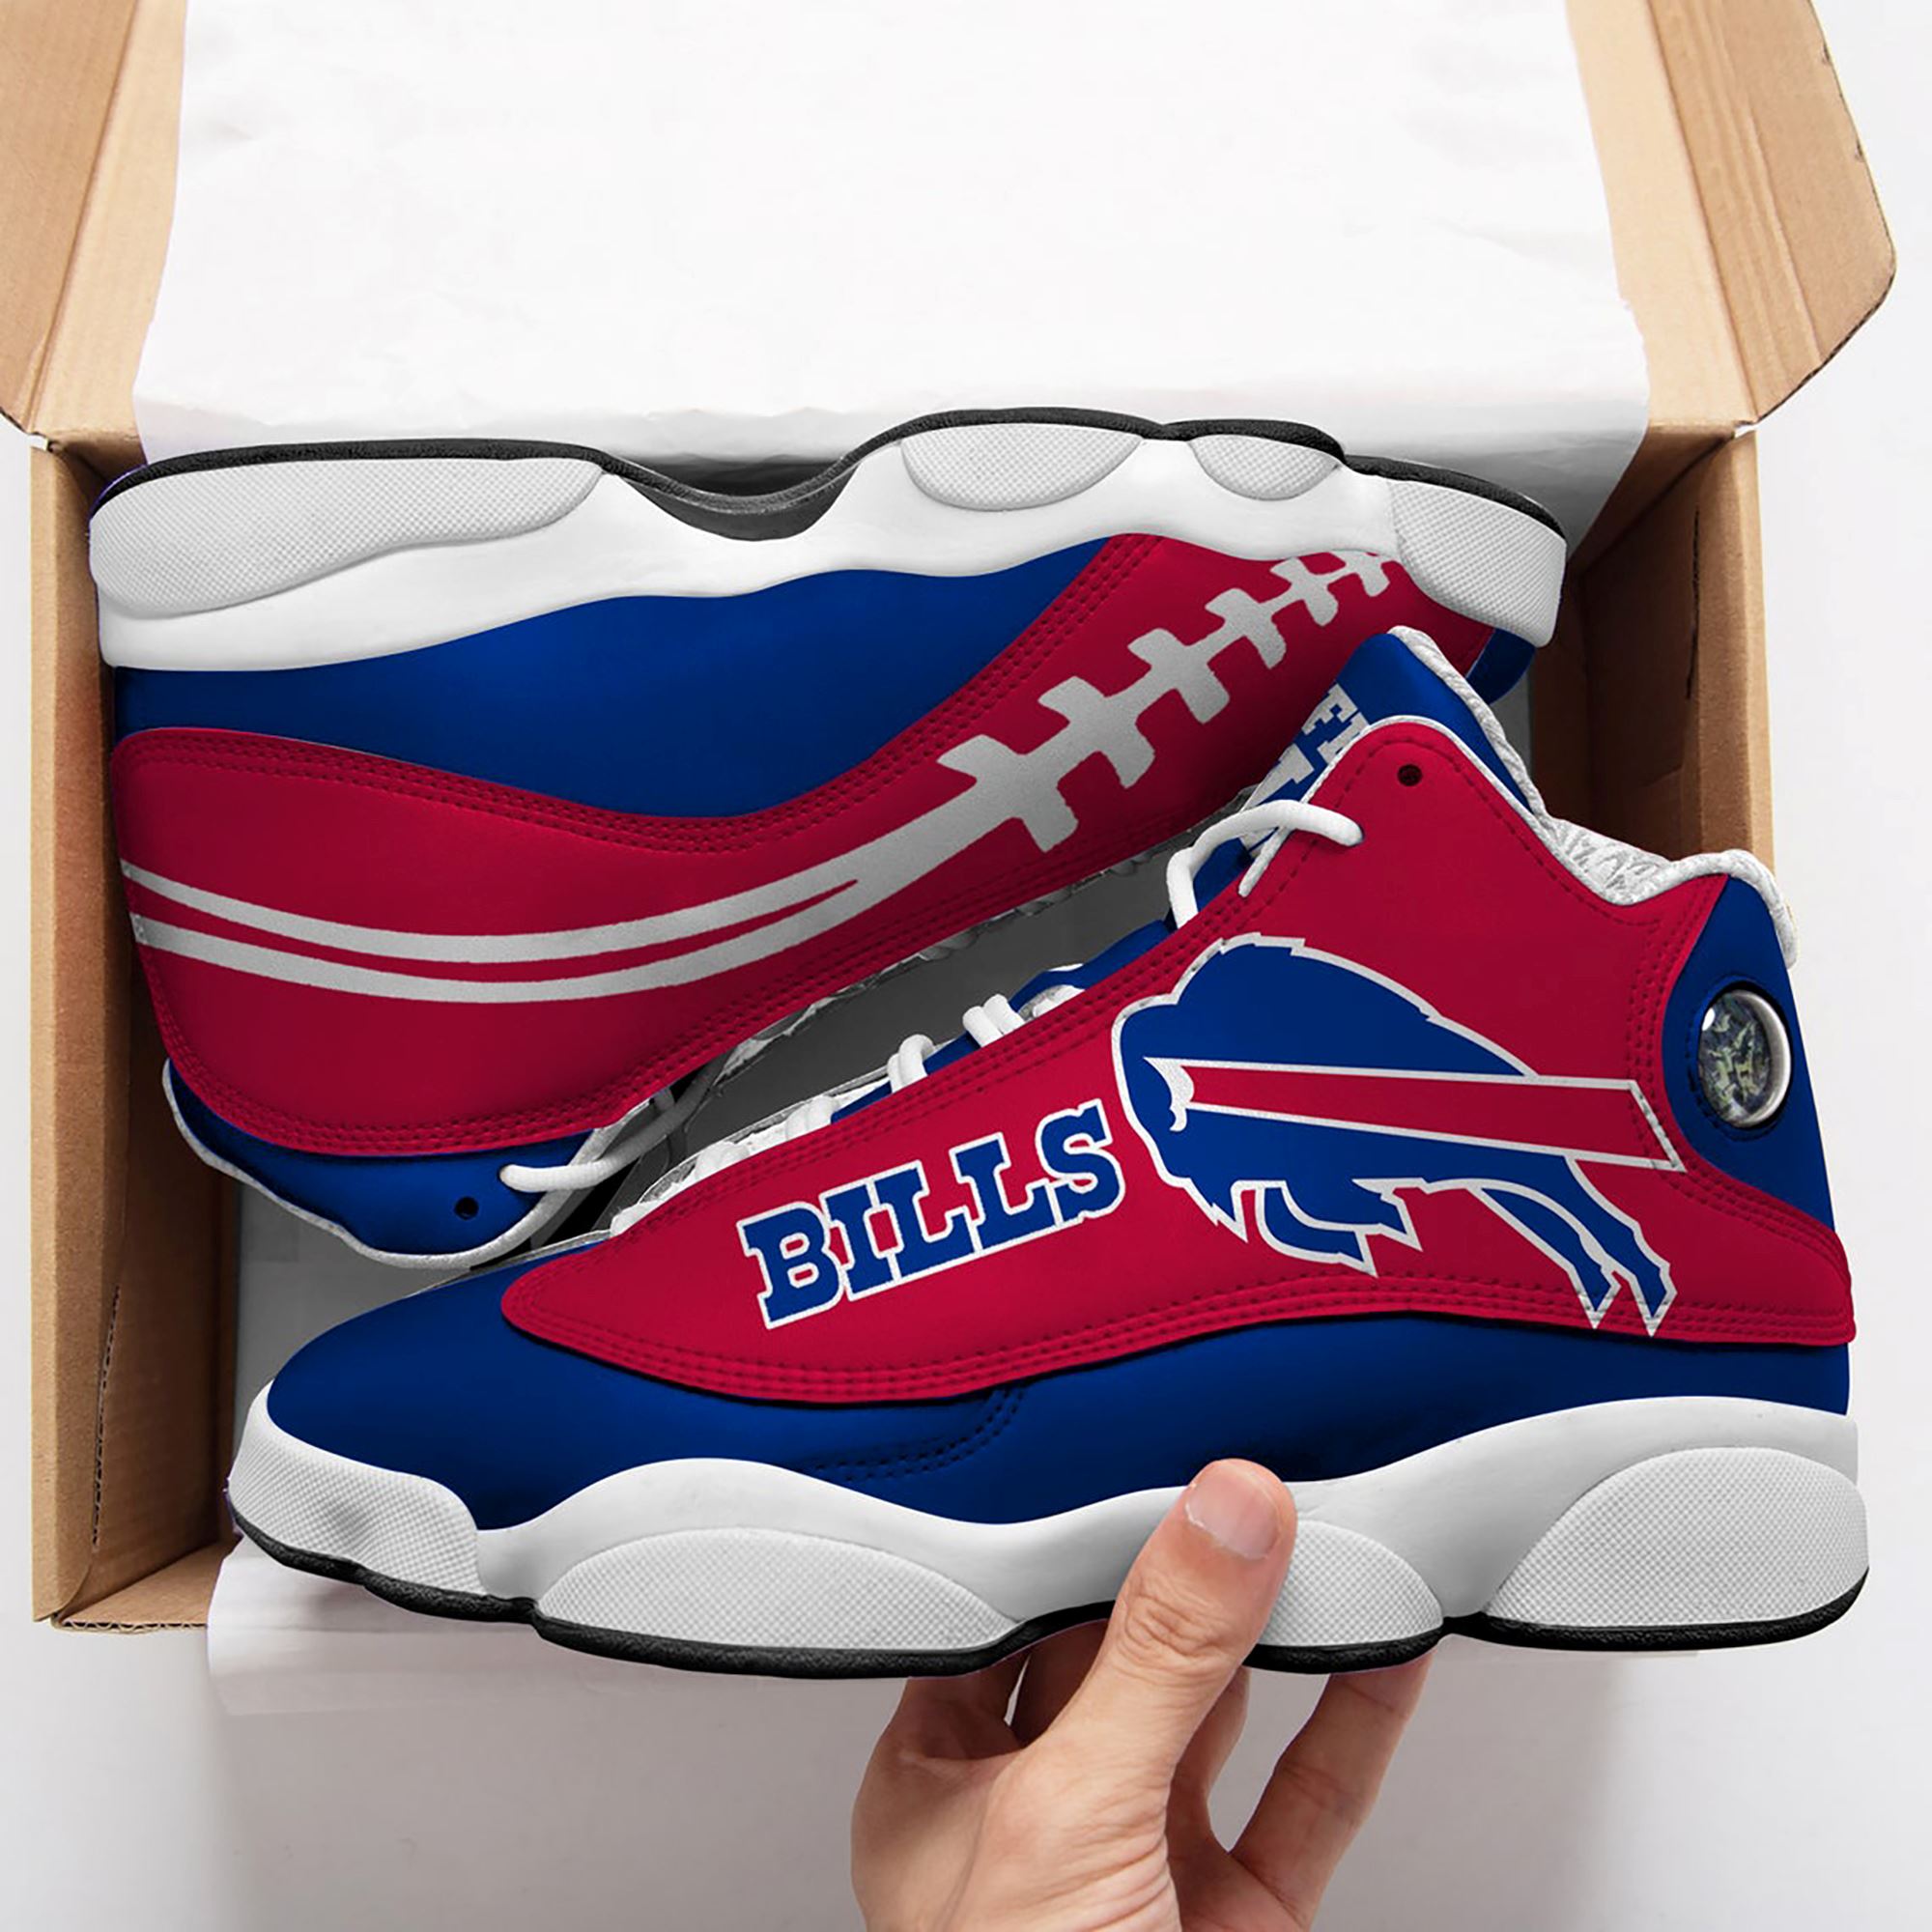 Buffalo Bills Jordan 13 Shoe Gifts For Him Rugby Shoes Personalized Jordan 13